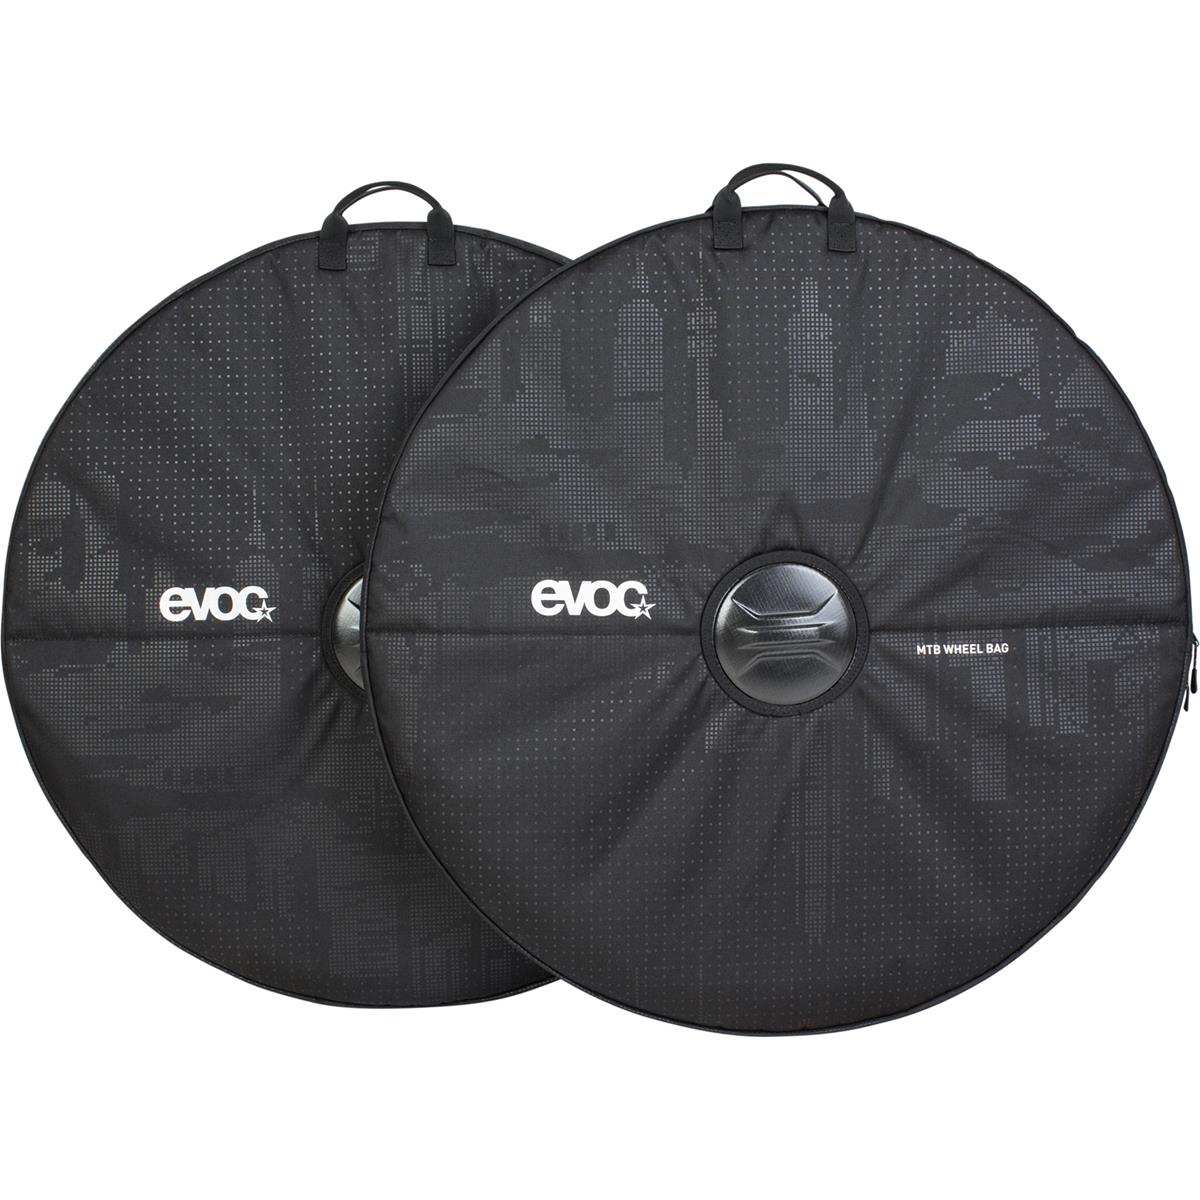 Evoc Laufrad Schutzhüllen-Set MTB Wheel Bag